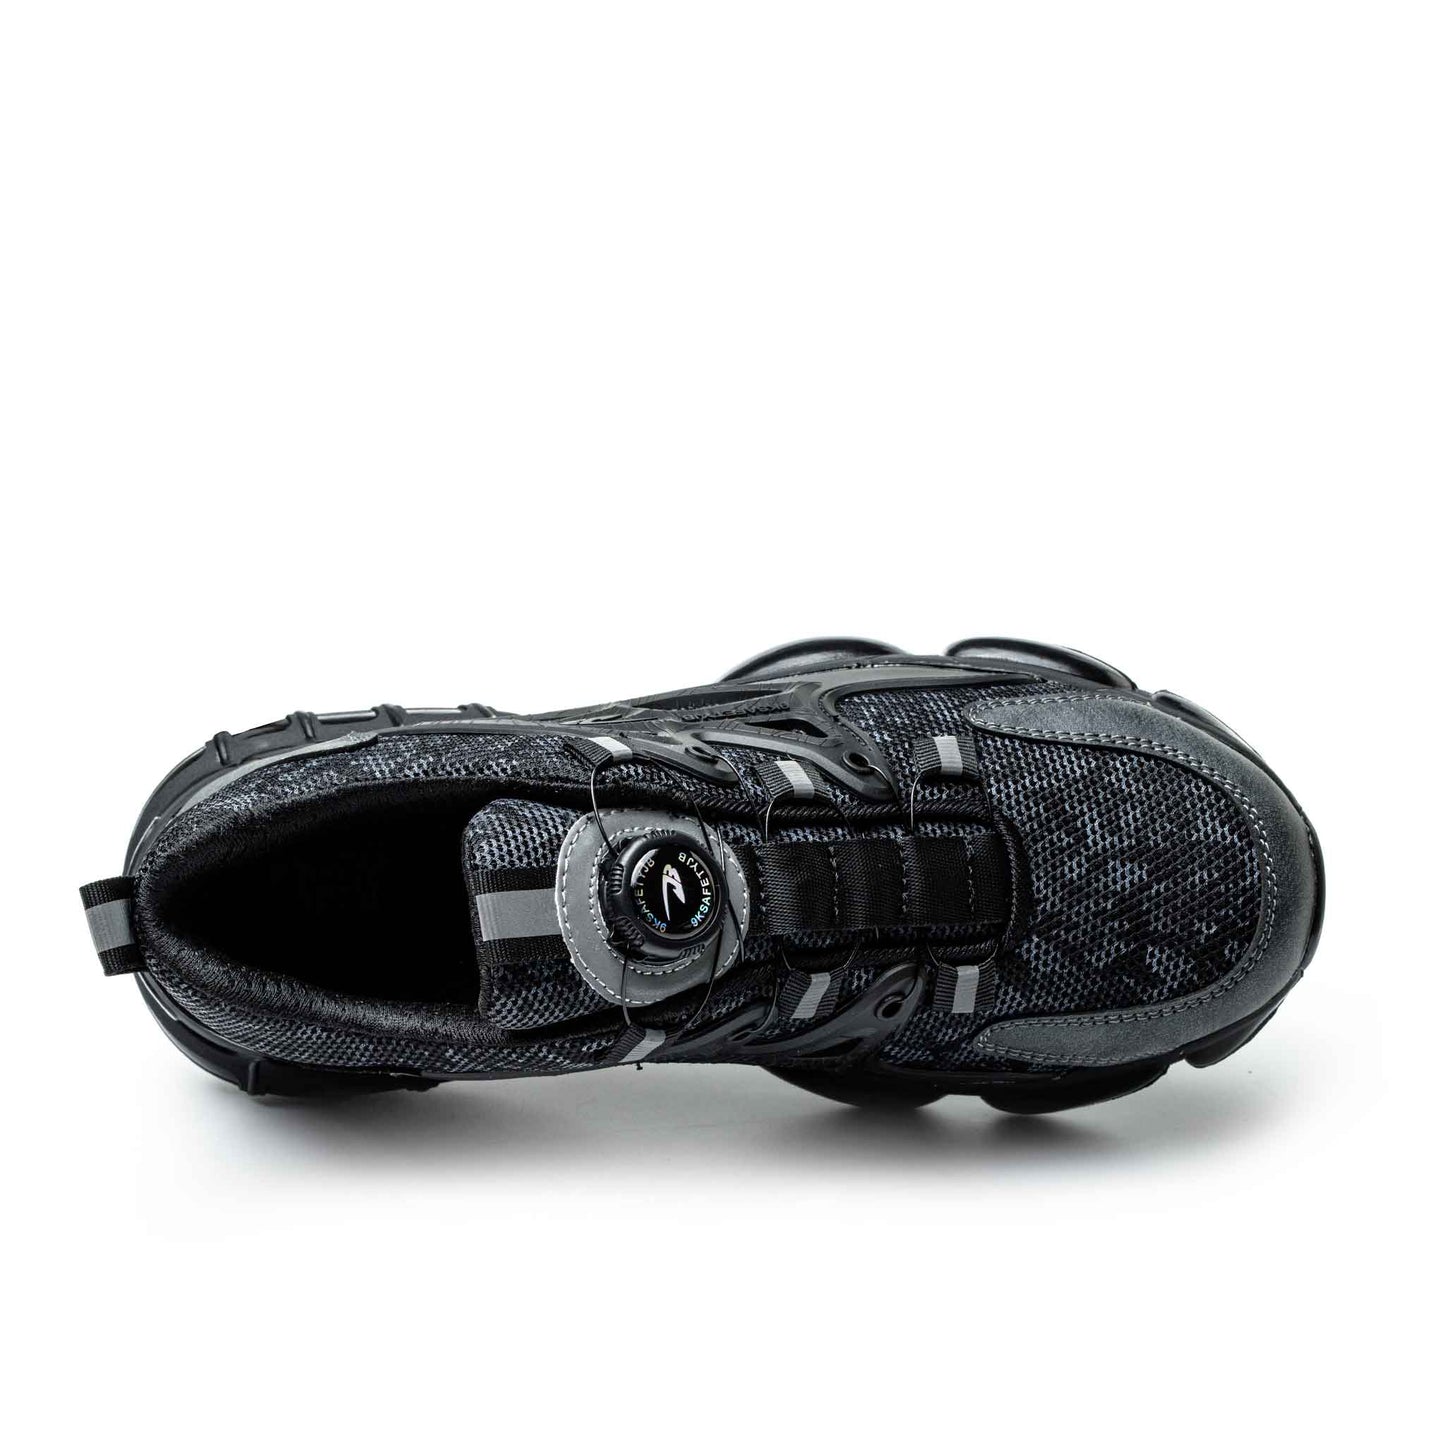 Ironfeet Cushion - Chaussures de sécurité légères avec bulles d'air